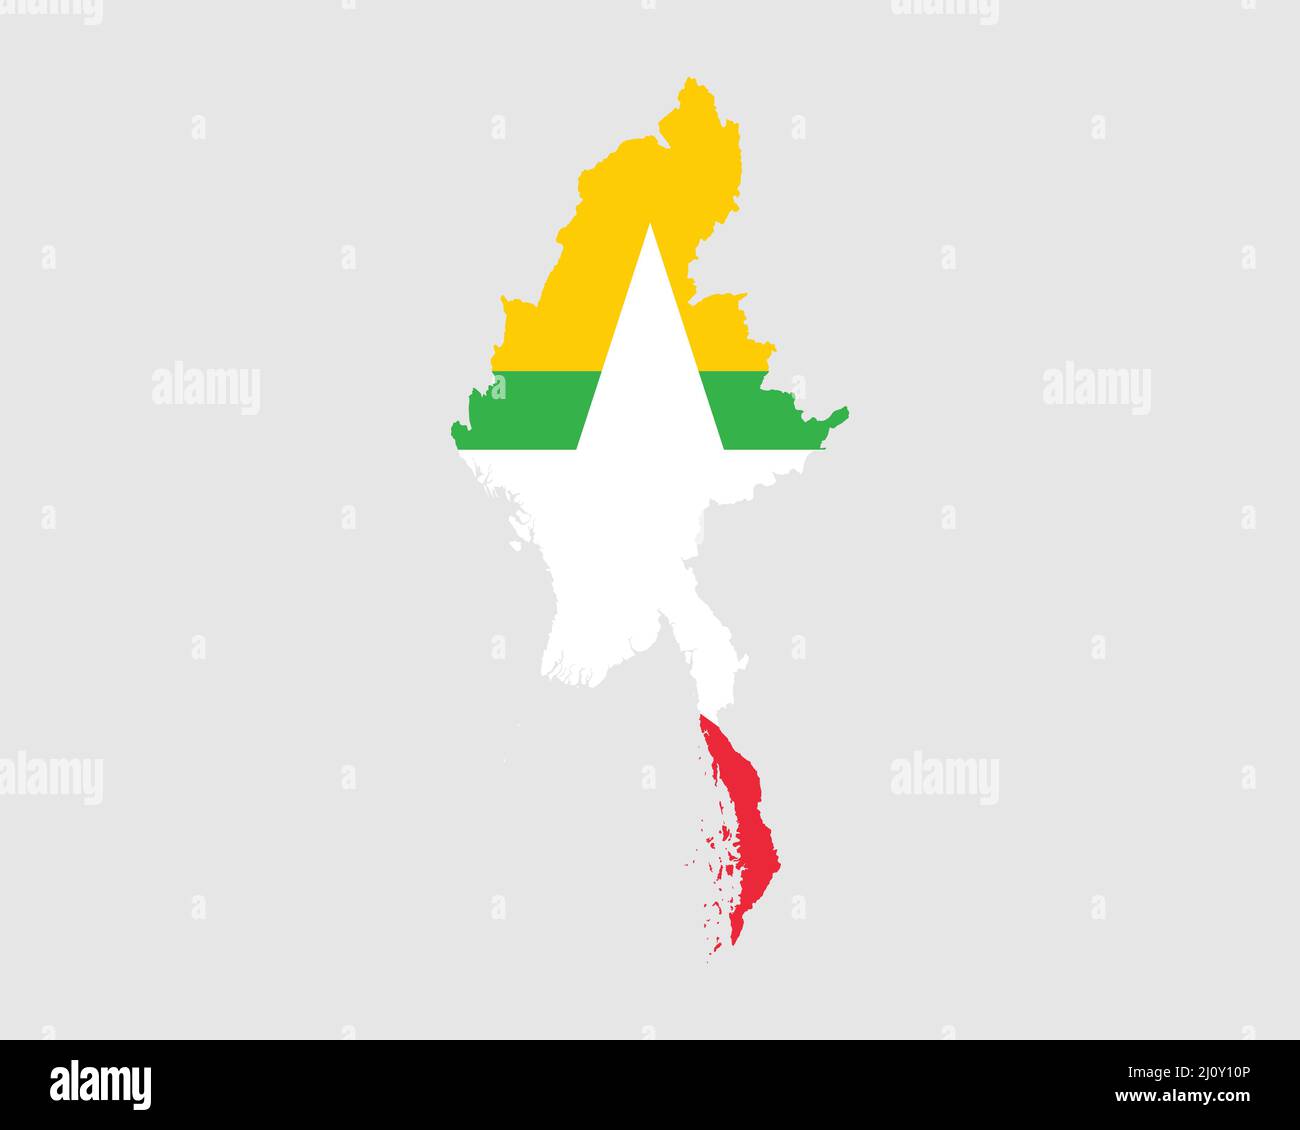 Myanmar Burma Flaggenkarte. Karte der Republik der Union von Myanmar mit dem burmesischen Länderbanner. Vektorgrafik. Stock Vektor